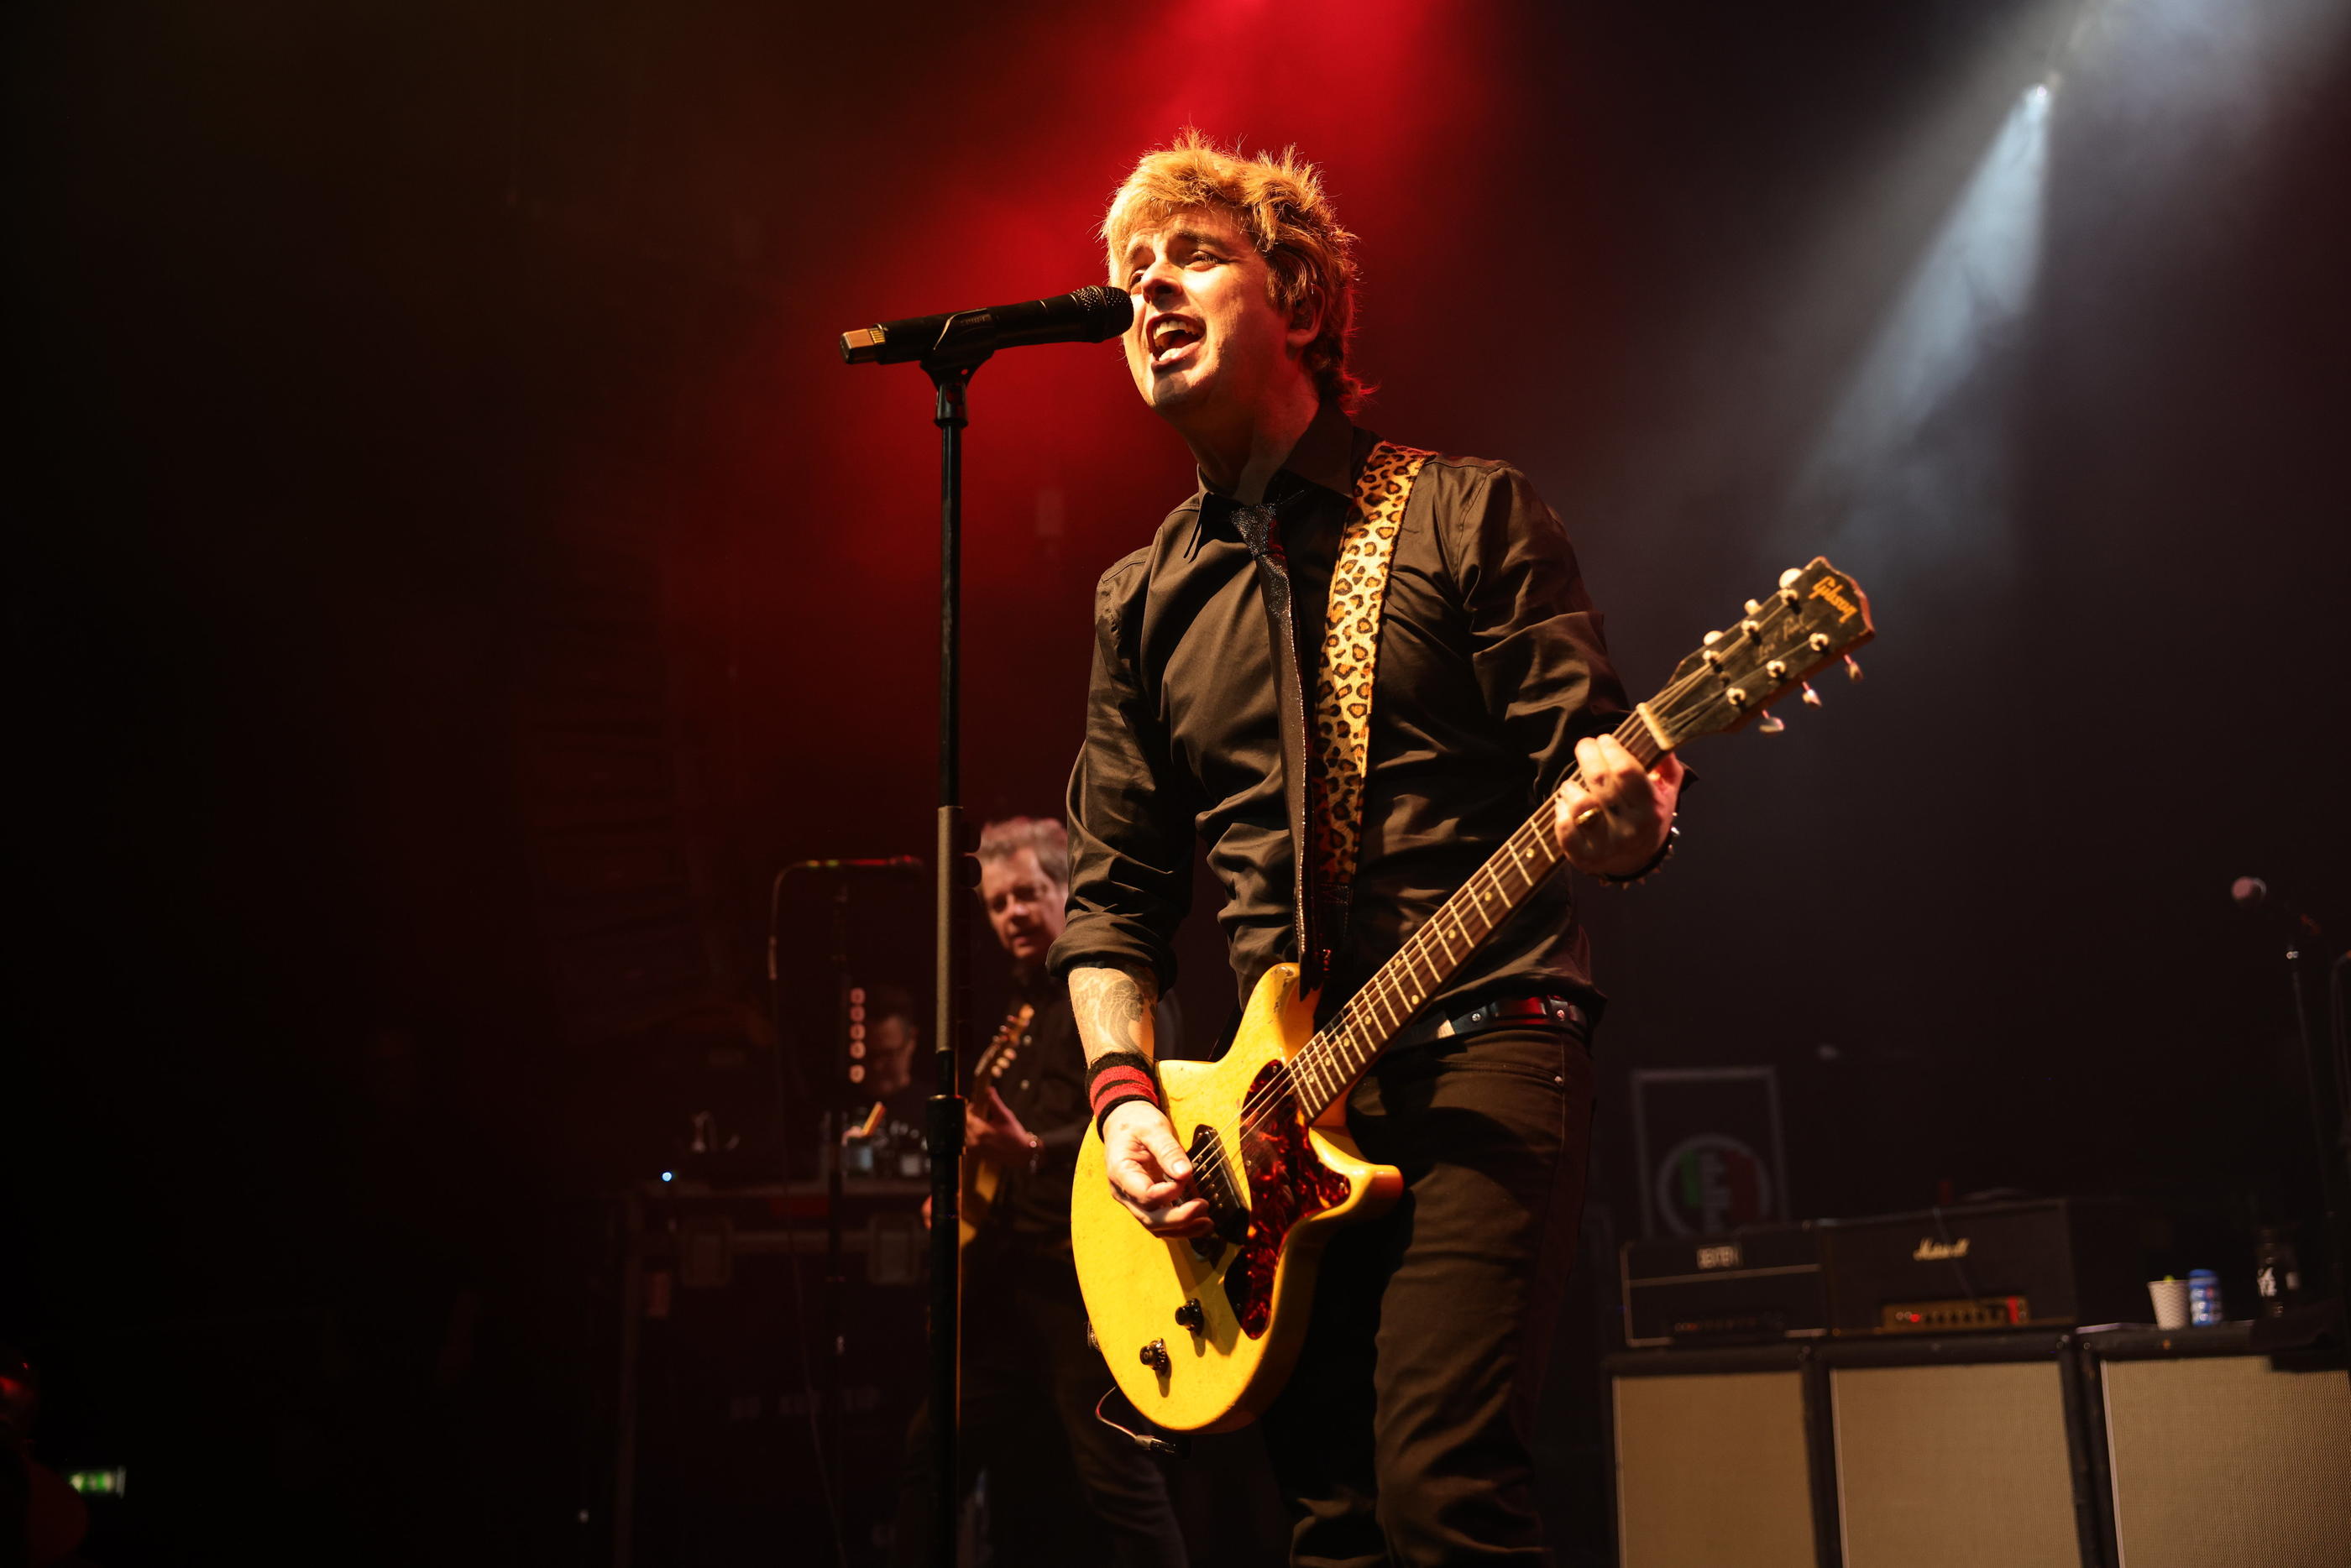 Paris XIe, samedi 4 novembre. Avant son concert prévu à l’Accor Arena l'an prochain, Green Day a tenu un évènement surprise au Bataclan, devant 1 500 personnes. LP/Olivier Arandel